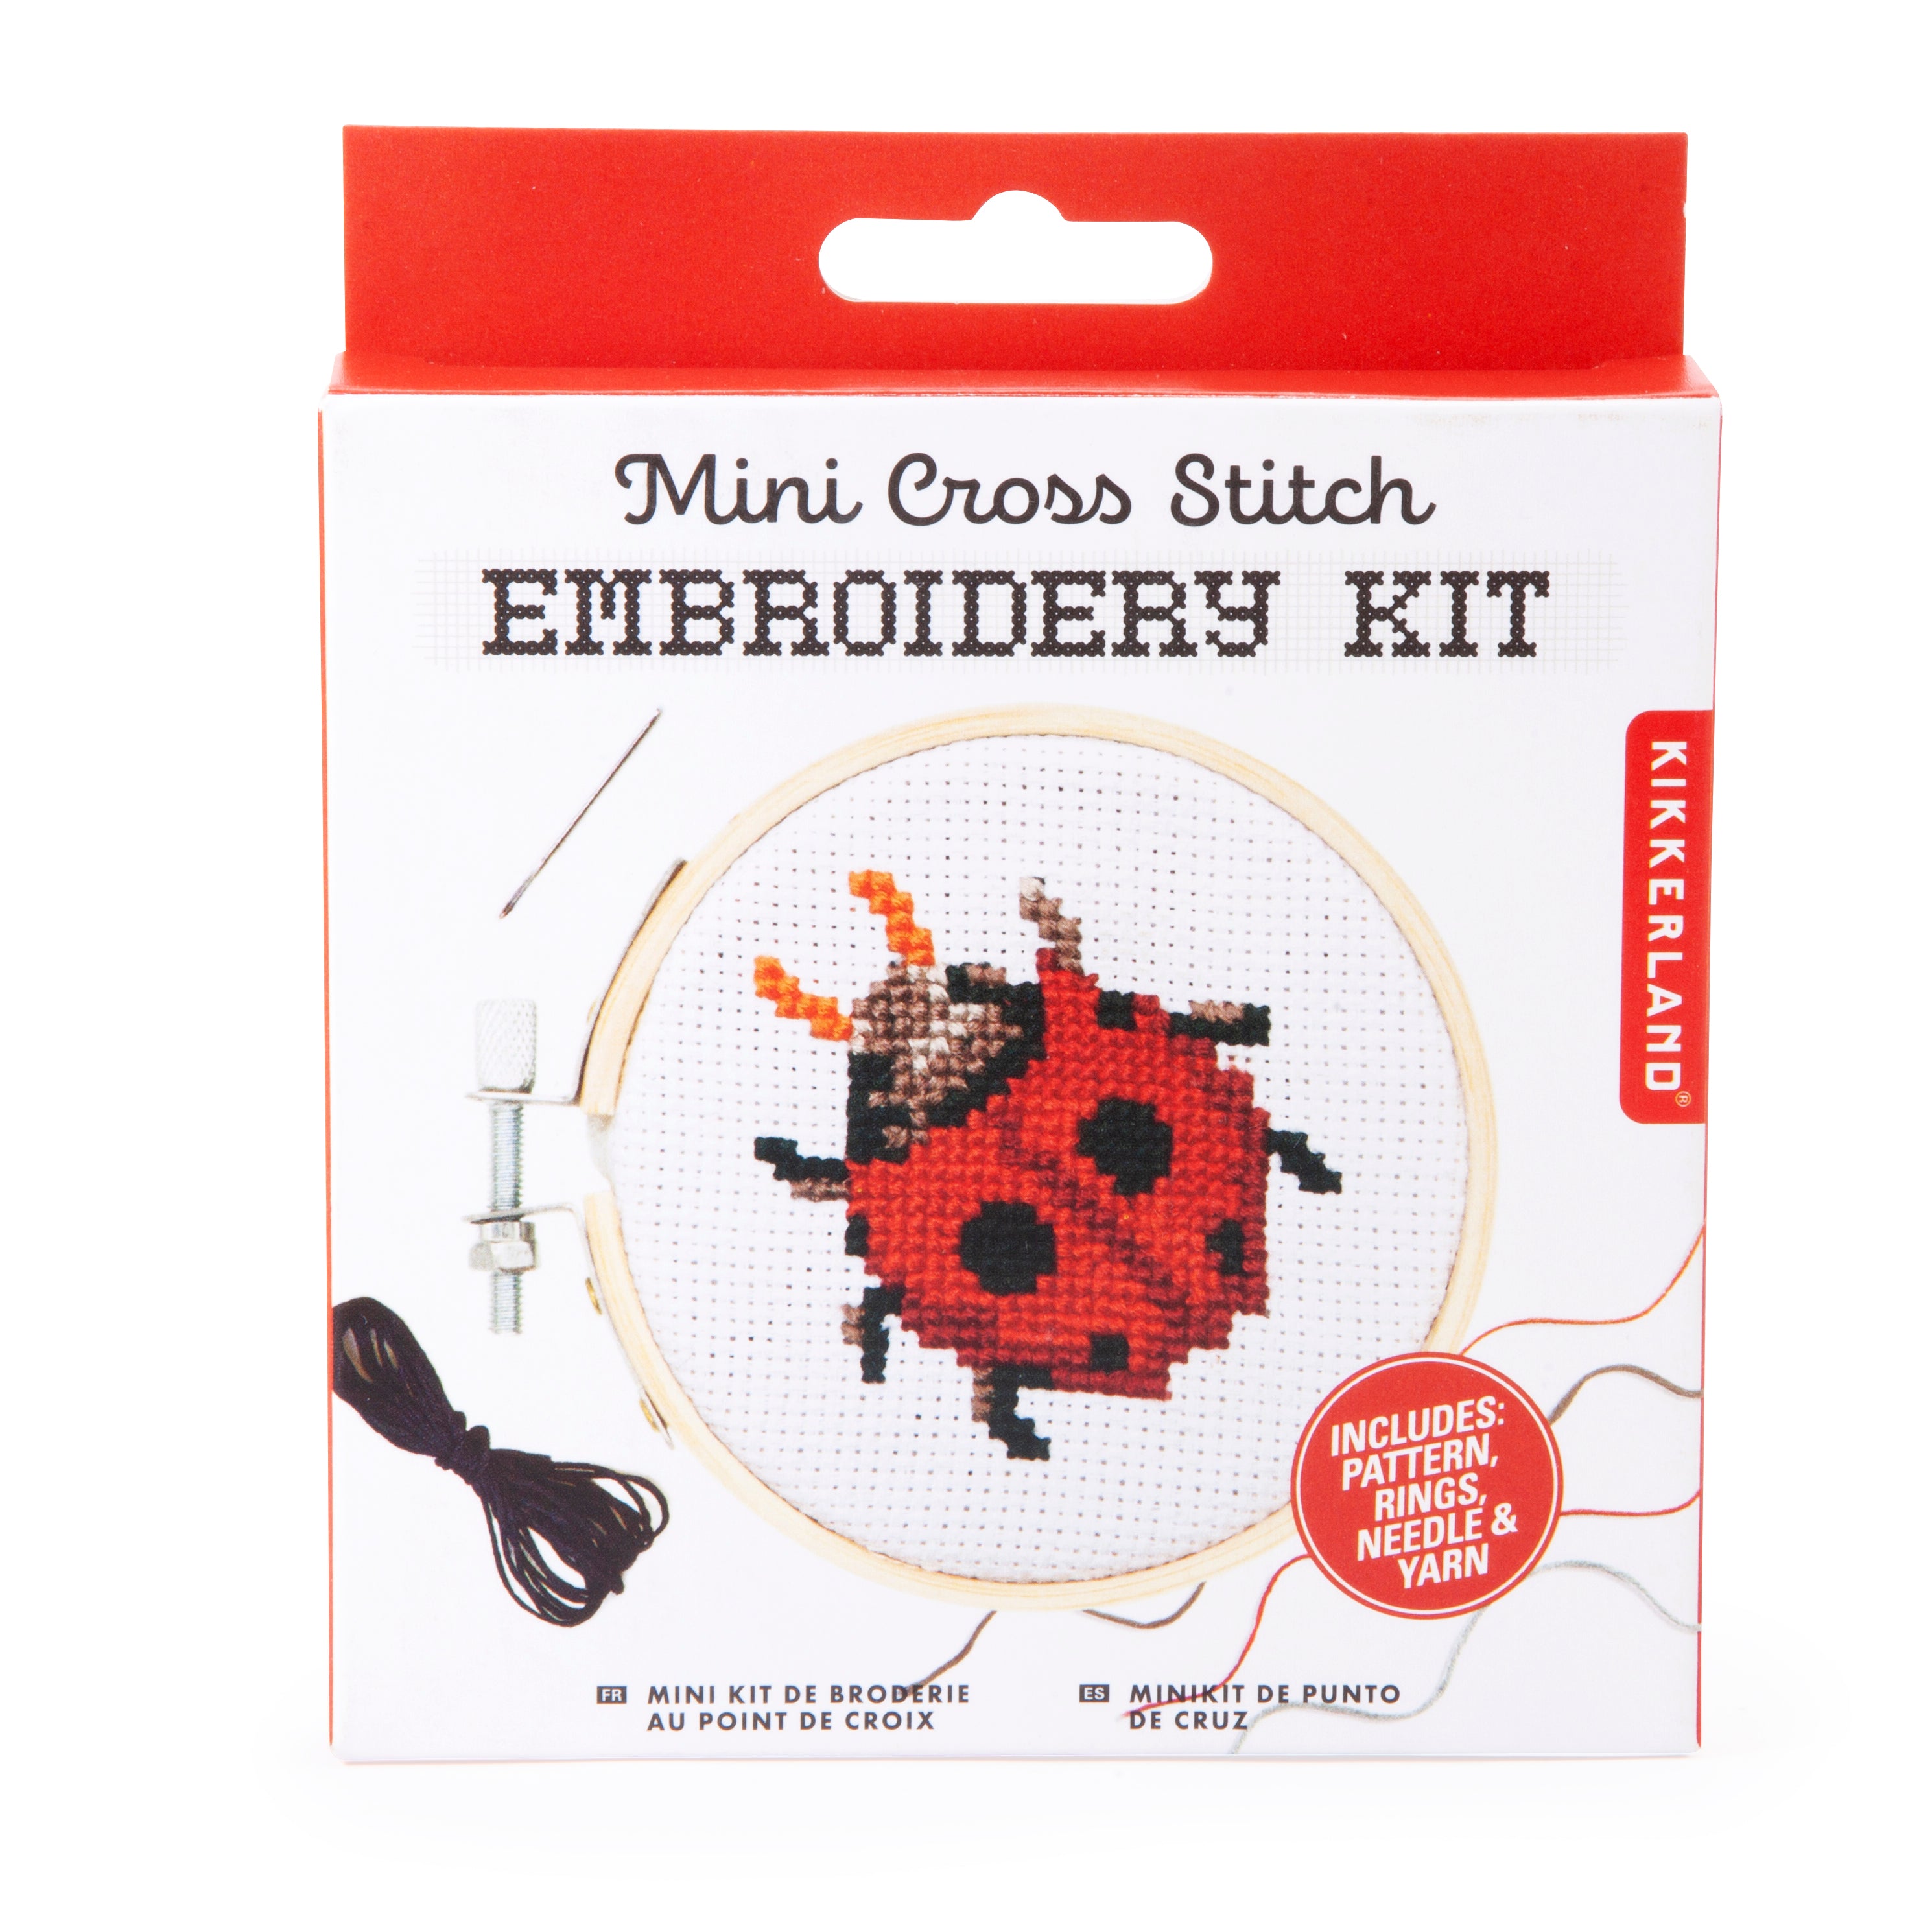 Mini Cross Stitch Embroidery Kit - Ladybug Kikkerland - Oscar & Libby's